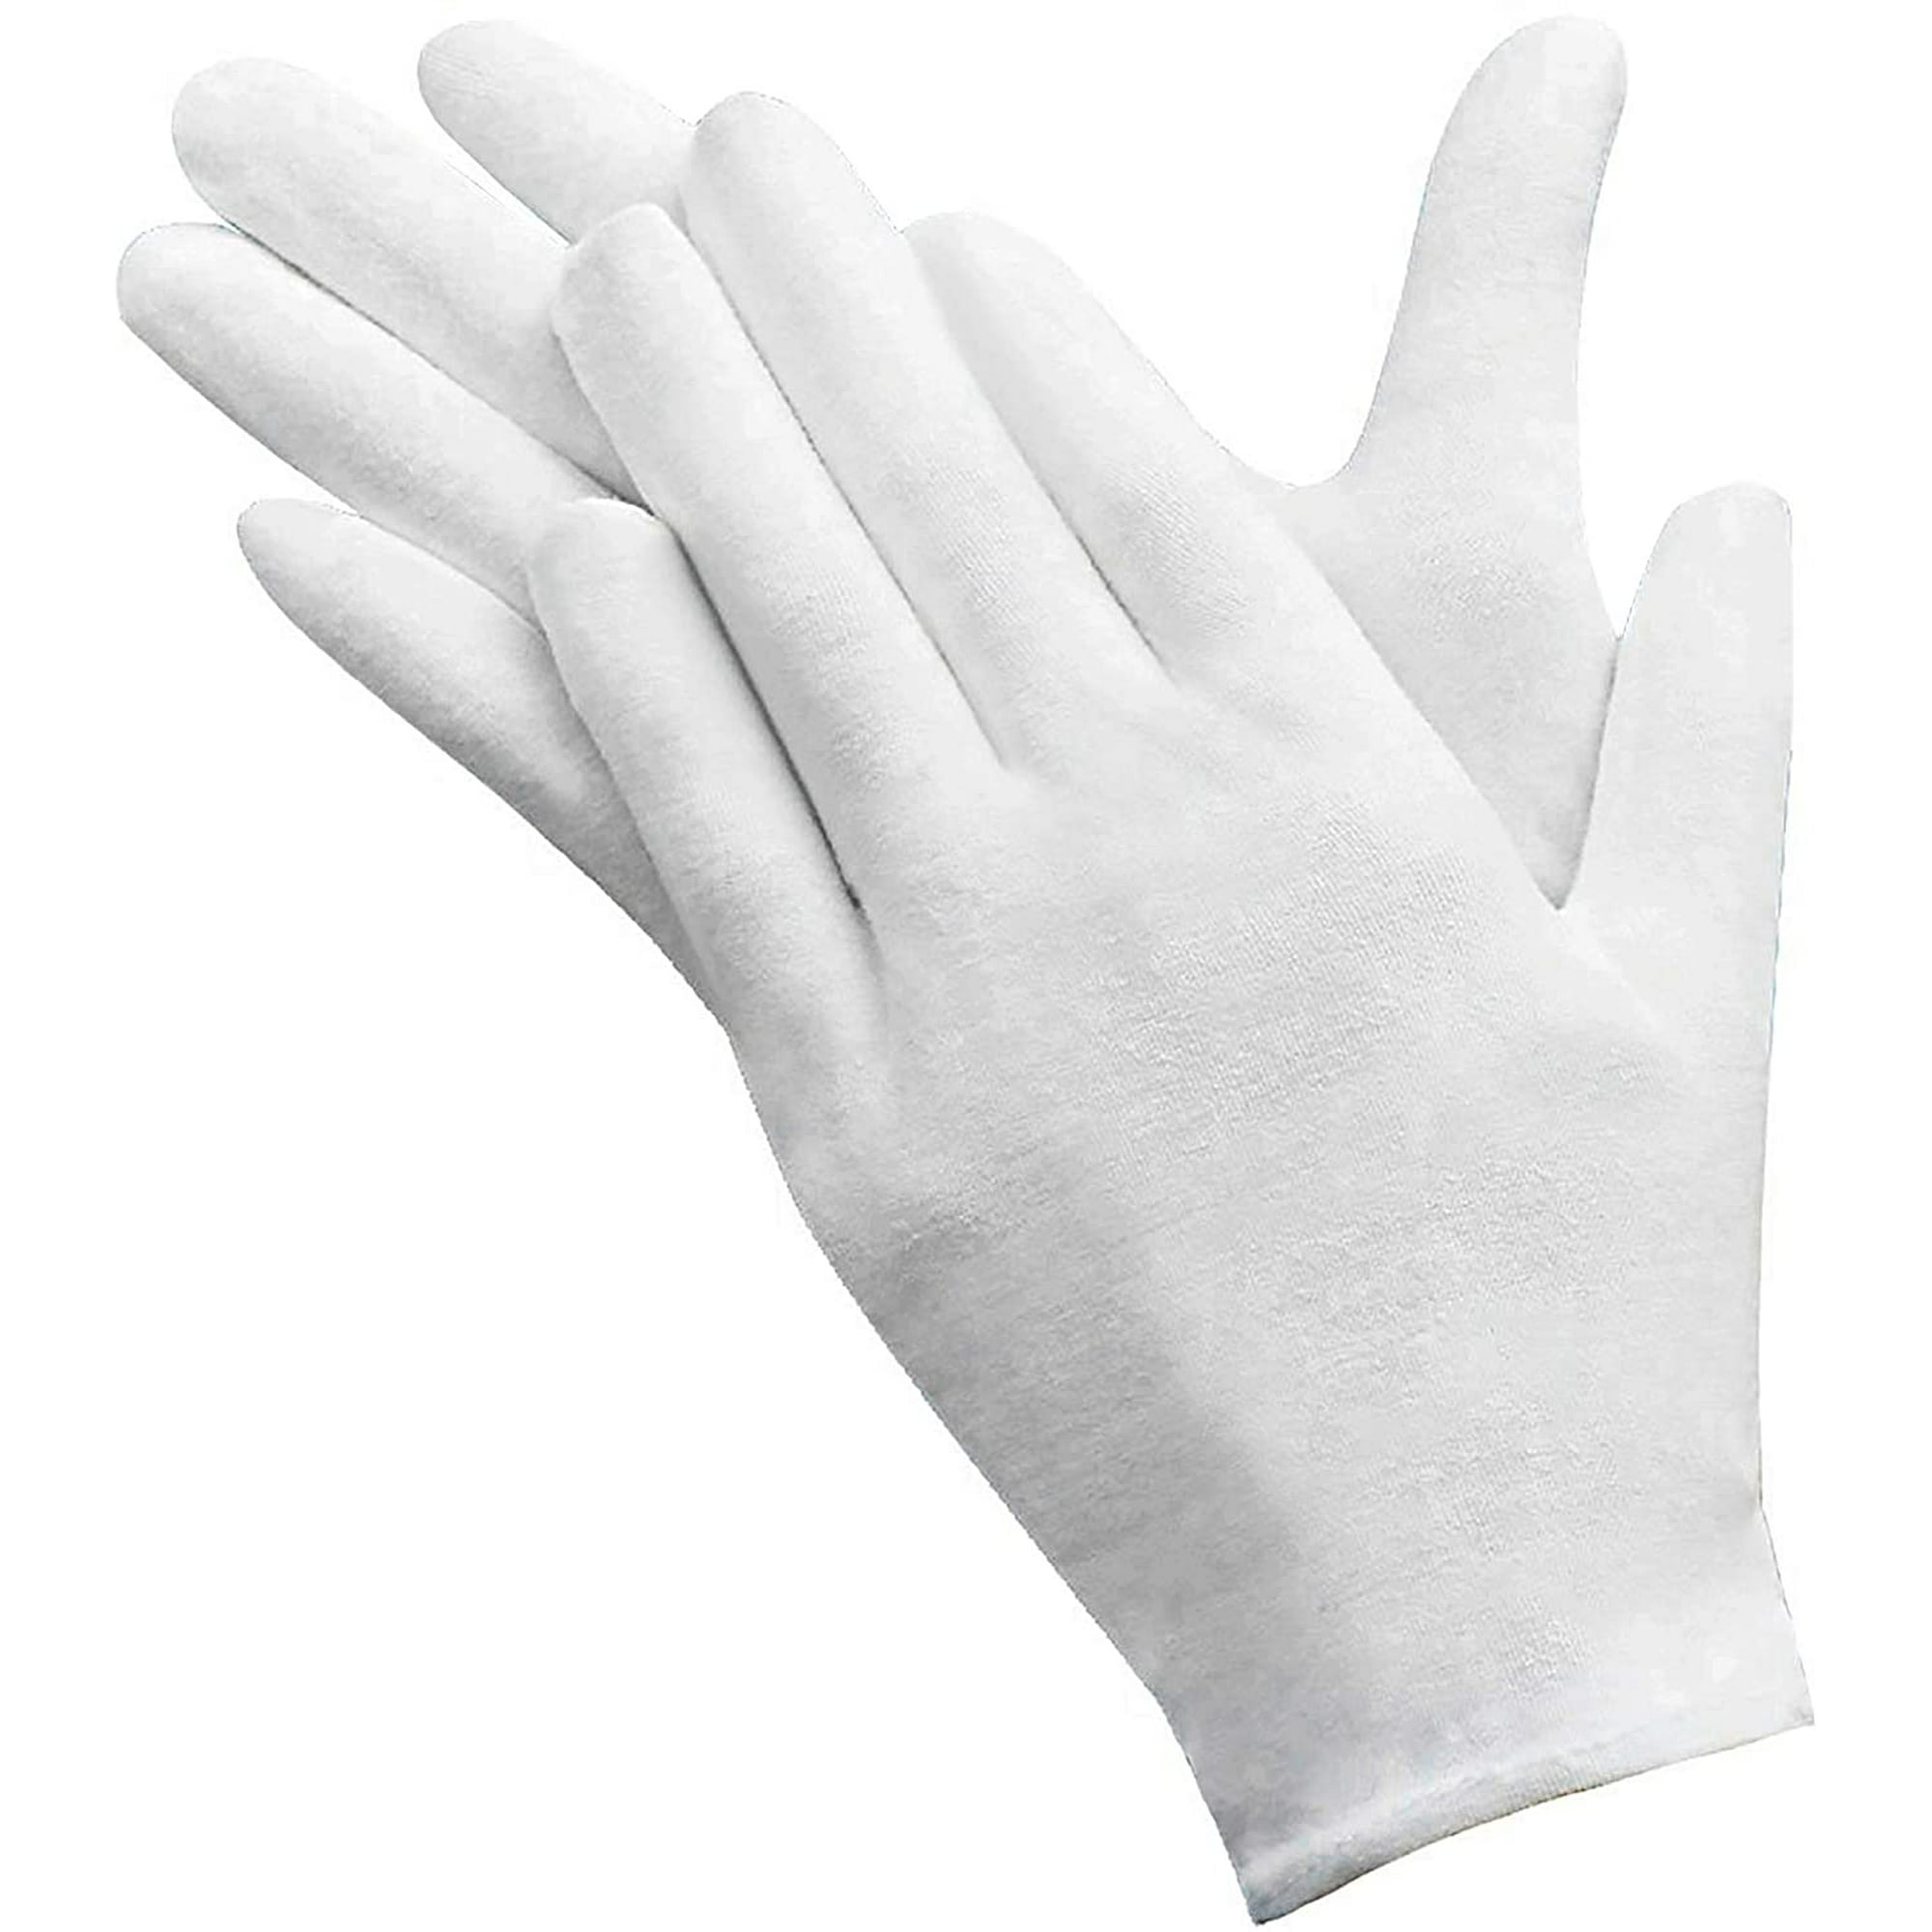 12 pares de guantes blancos de algodón, guantes de algodón suave, guantes  de trabajo transpirables para mujer ZefeiWu 8390614894693